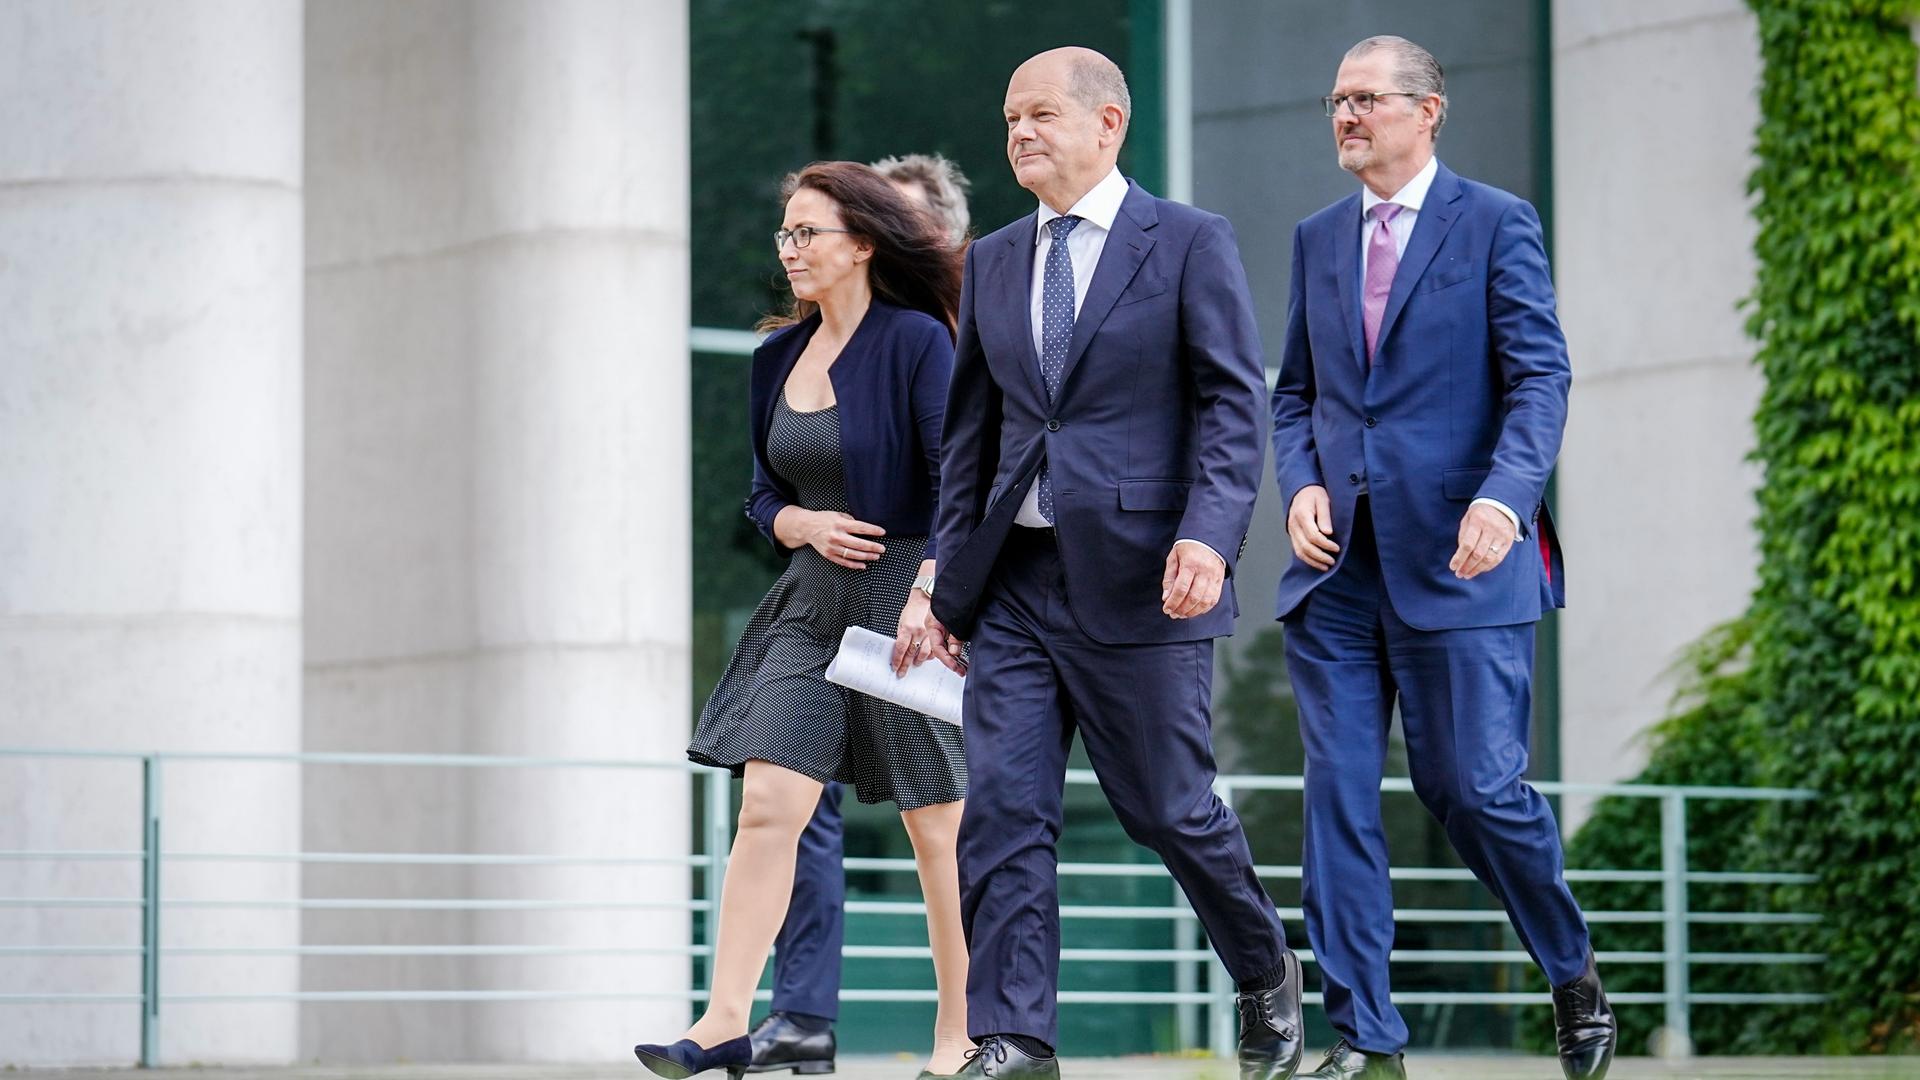 Bundeskanzler Olaf Scholz (M, SPD), Yasmin Fahimi, DGB-Chefin, und Rainer Dulger, Arbeitgeberpräsident, laufen gemeinsam durch die Anlage des Kanzleramtes.